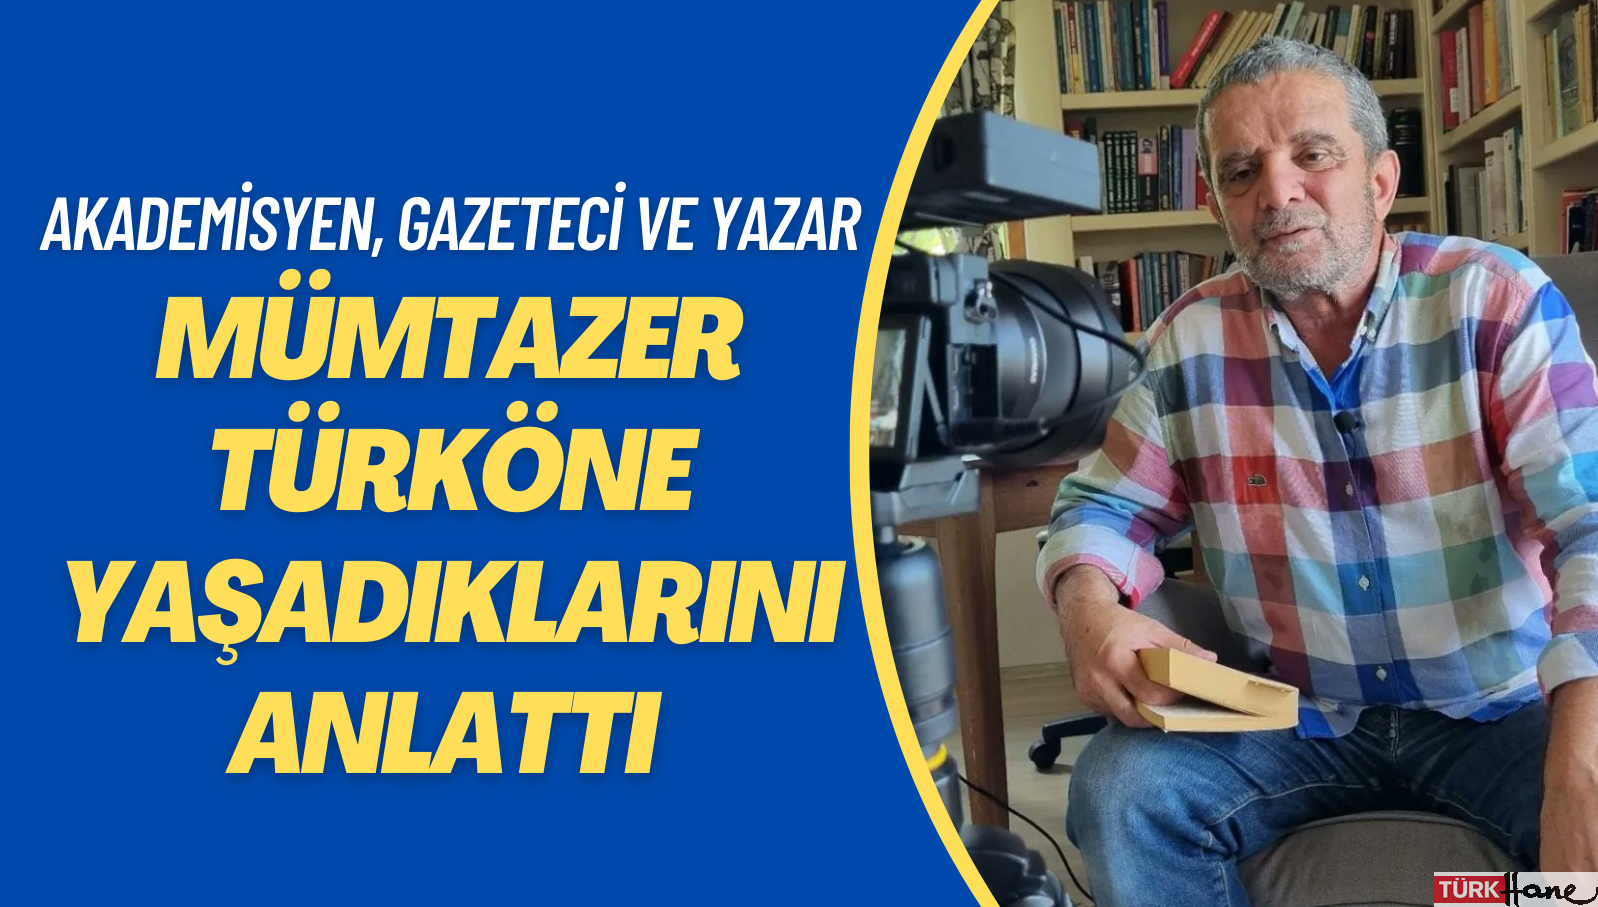 Akademisyen, gazeteci ve yazar Mümtazer Türköne yaşadıklarını anlattı